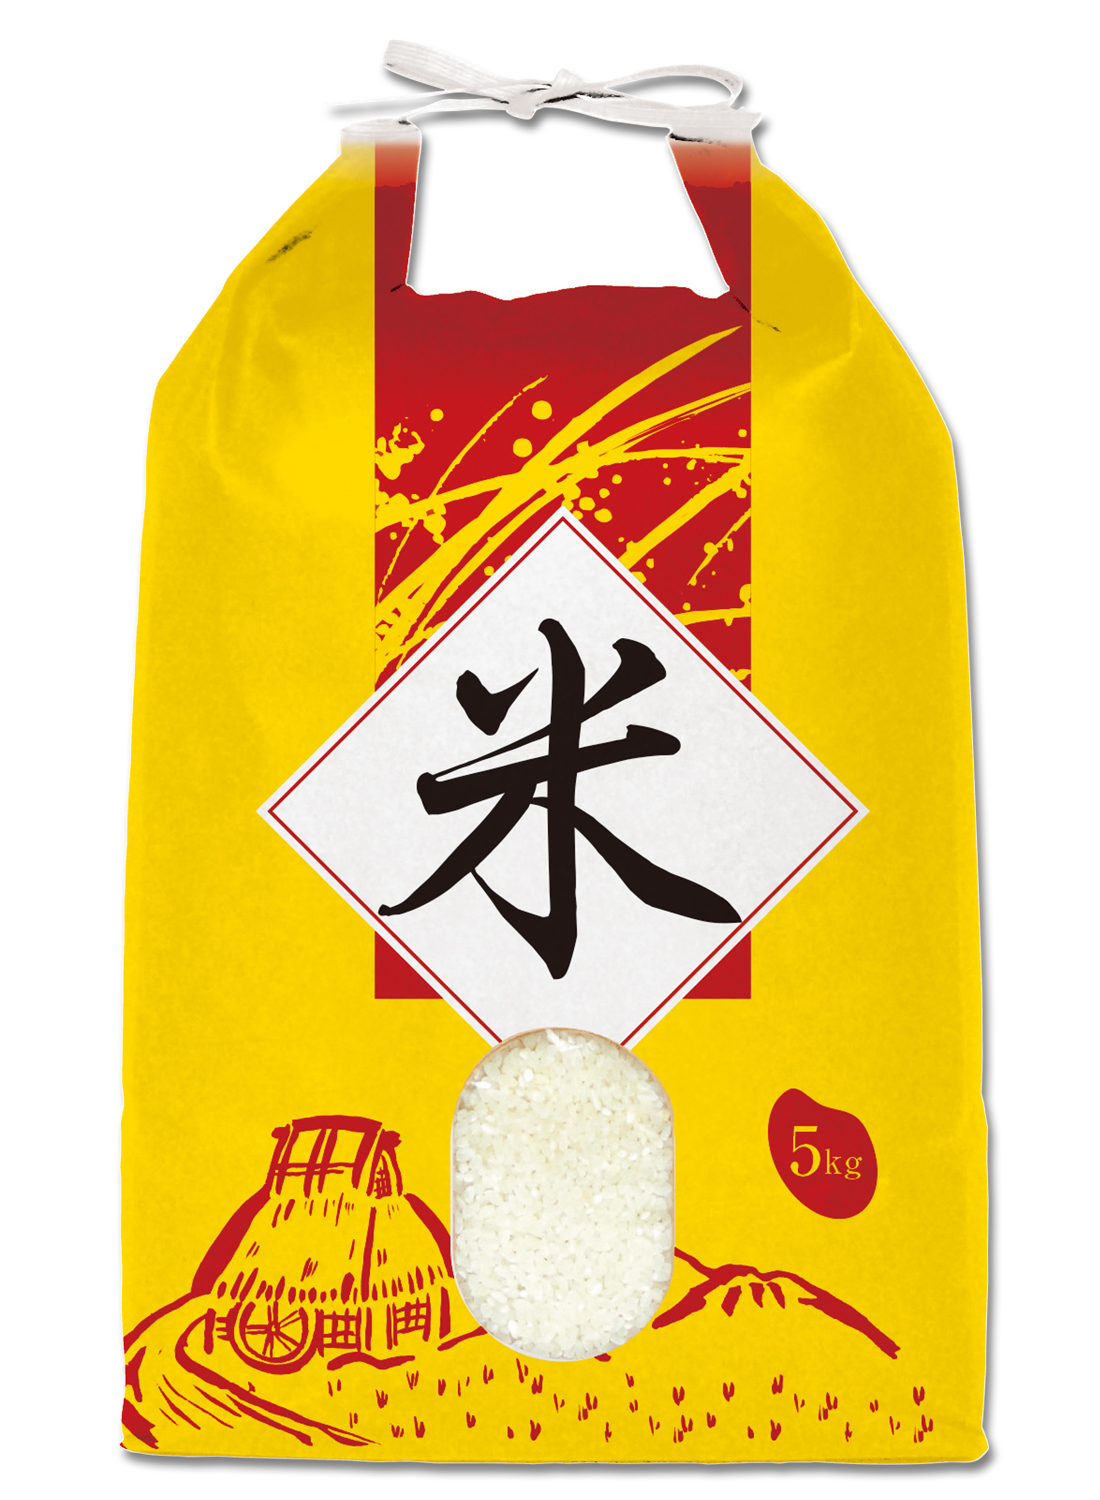 アウトレット☆送料無料 米袋 ポリ乳白 もち米 福うさぎ 5kg用 100枚セット P-01700